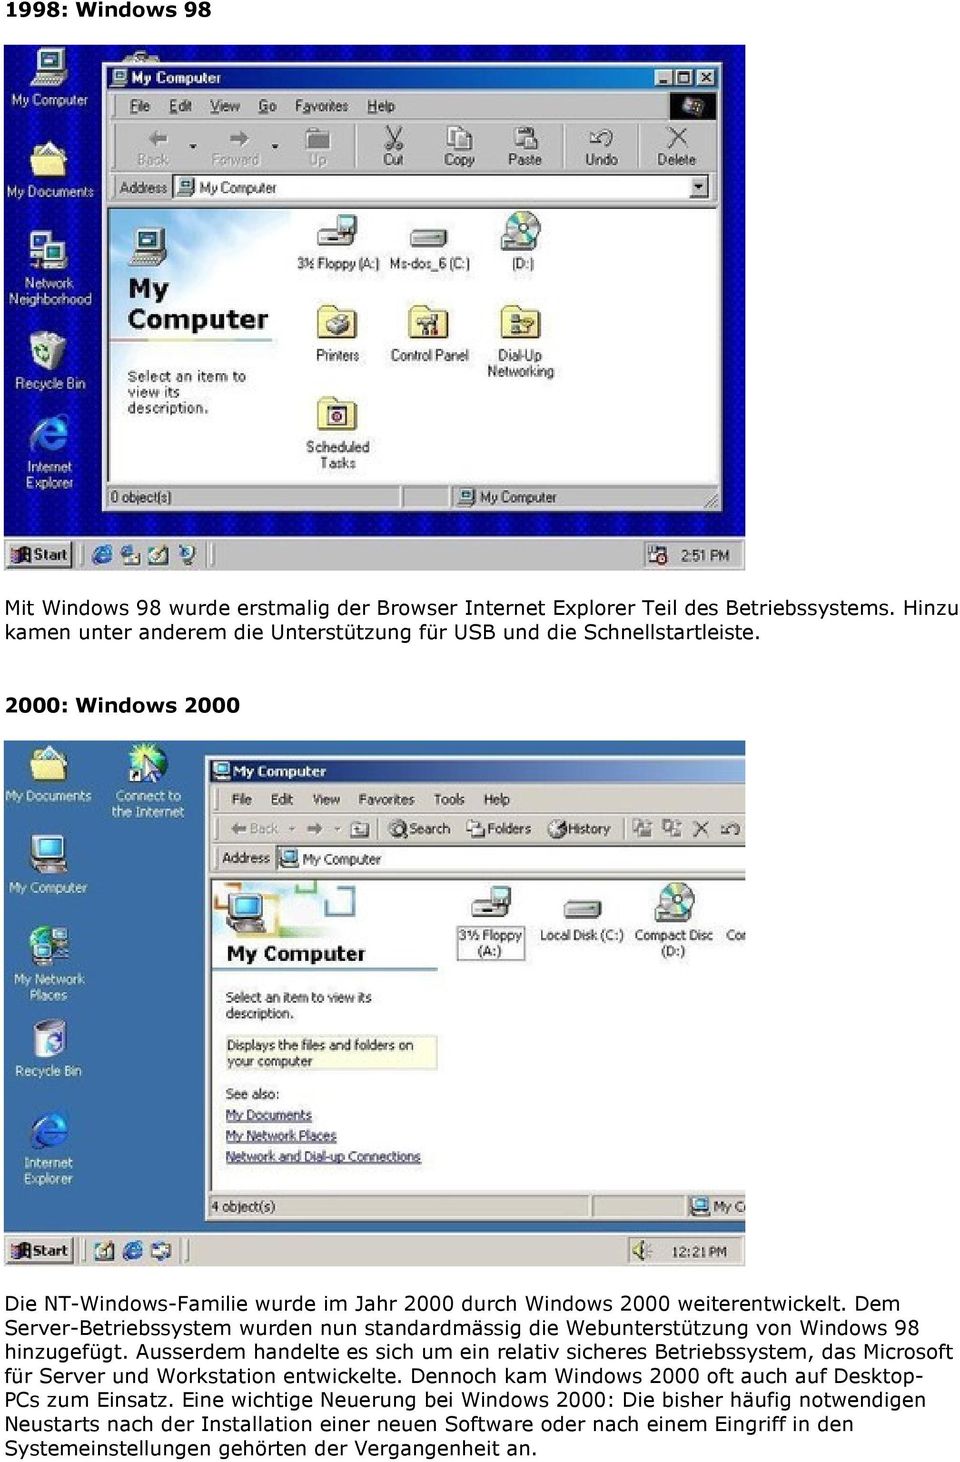 Dem Server-Betriebssystem wurden nun standardmässig die Webunterstützung von Windows 98 hinzugefügt.